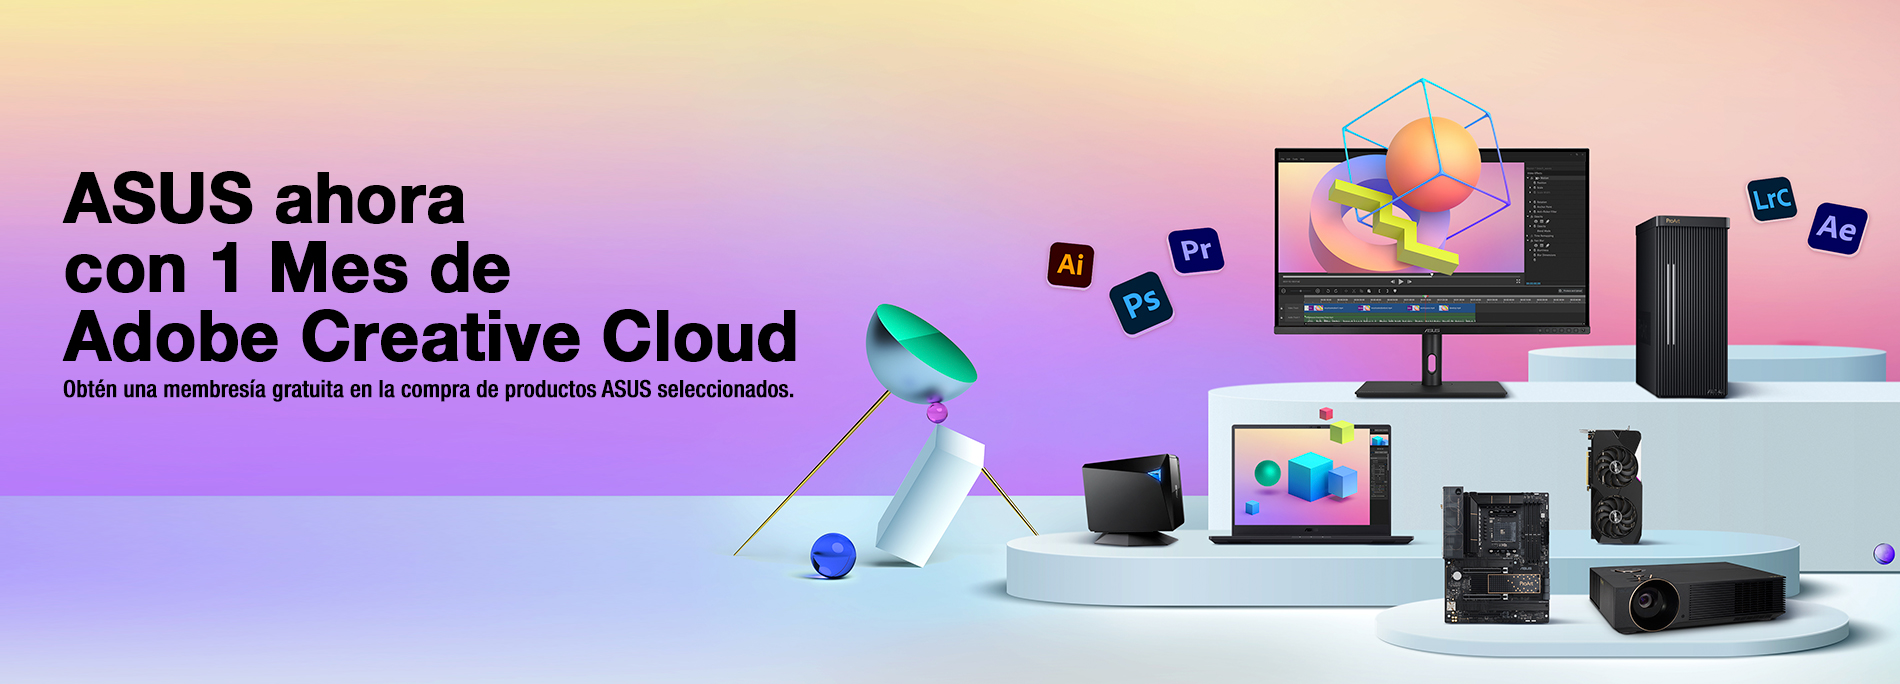 ASUS ahora con 1 mes de Adobe Creative Cloud 